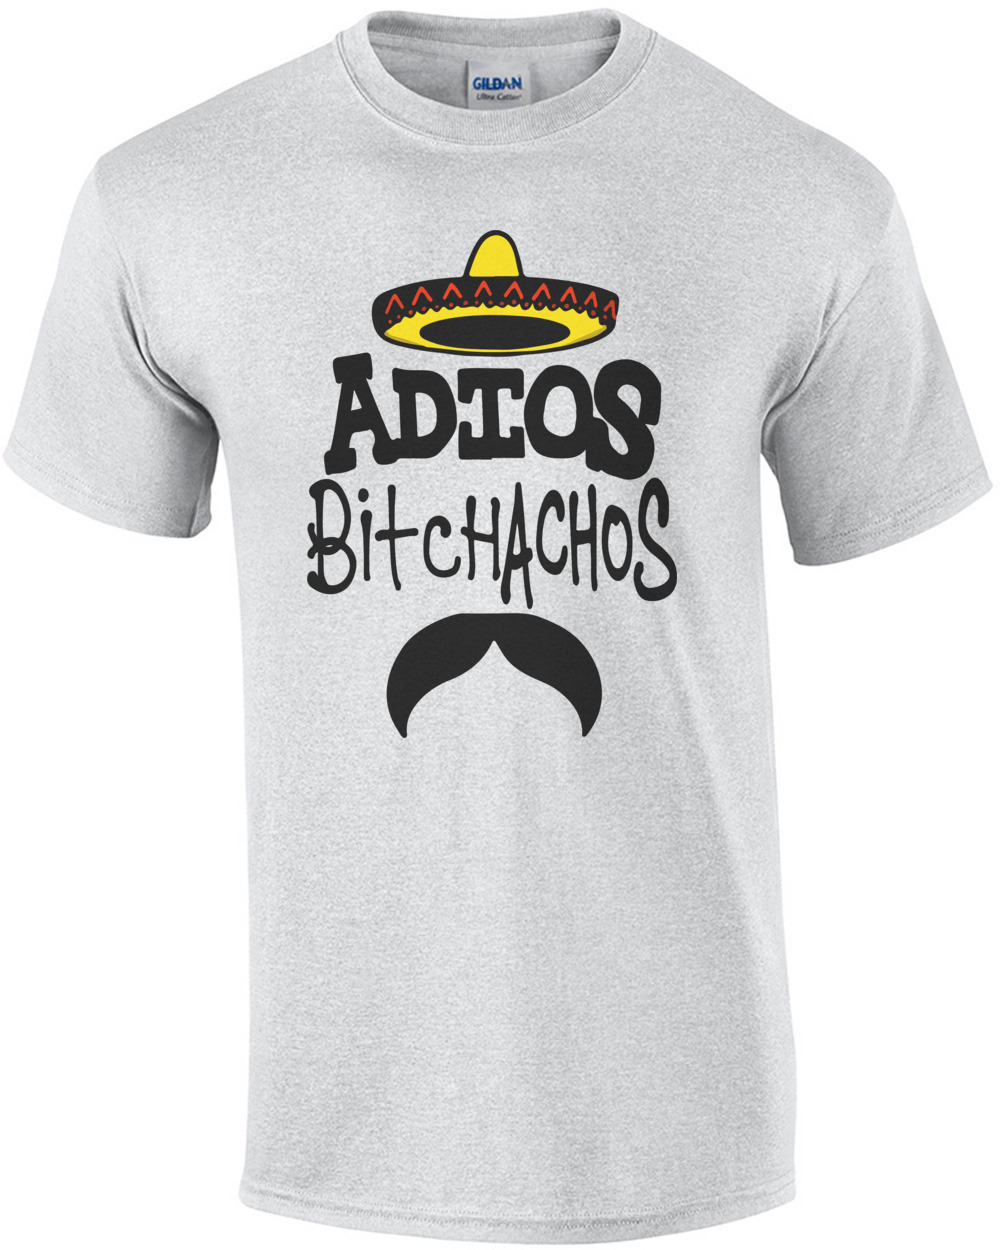 ADIOS Bitchachos Mexican Moustache Men Women Vest Tank Top Unisex T Shirt 2174 